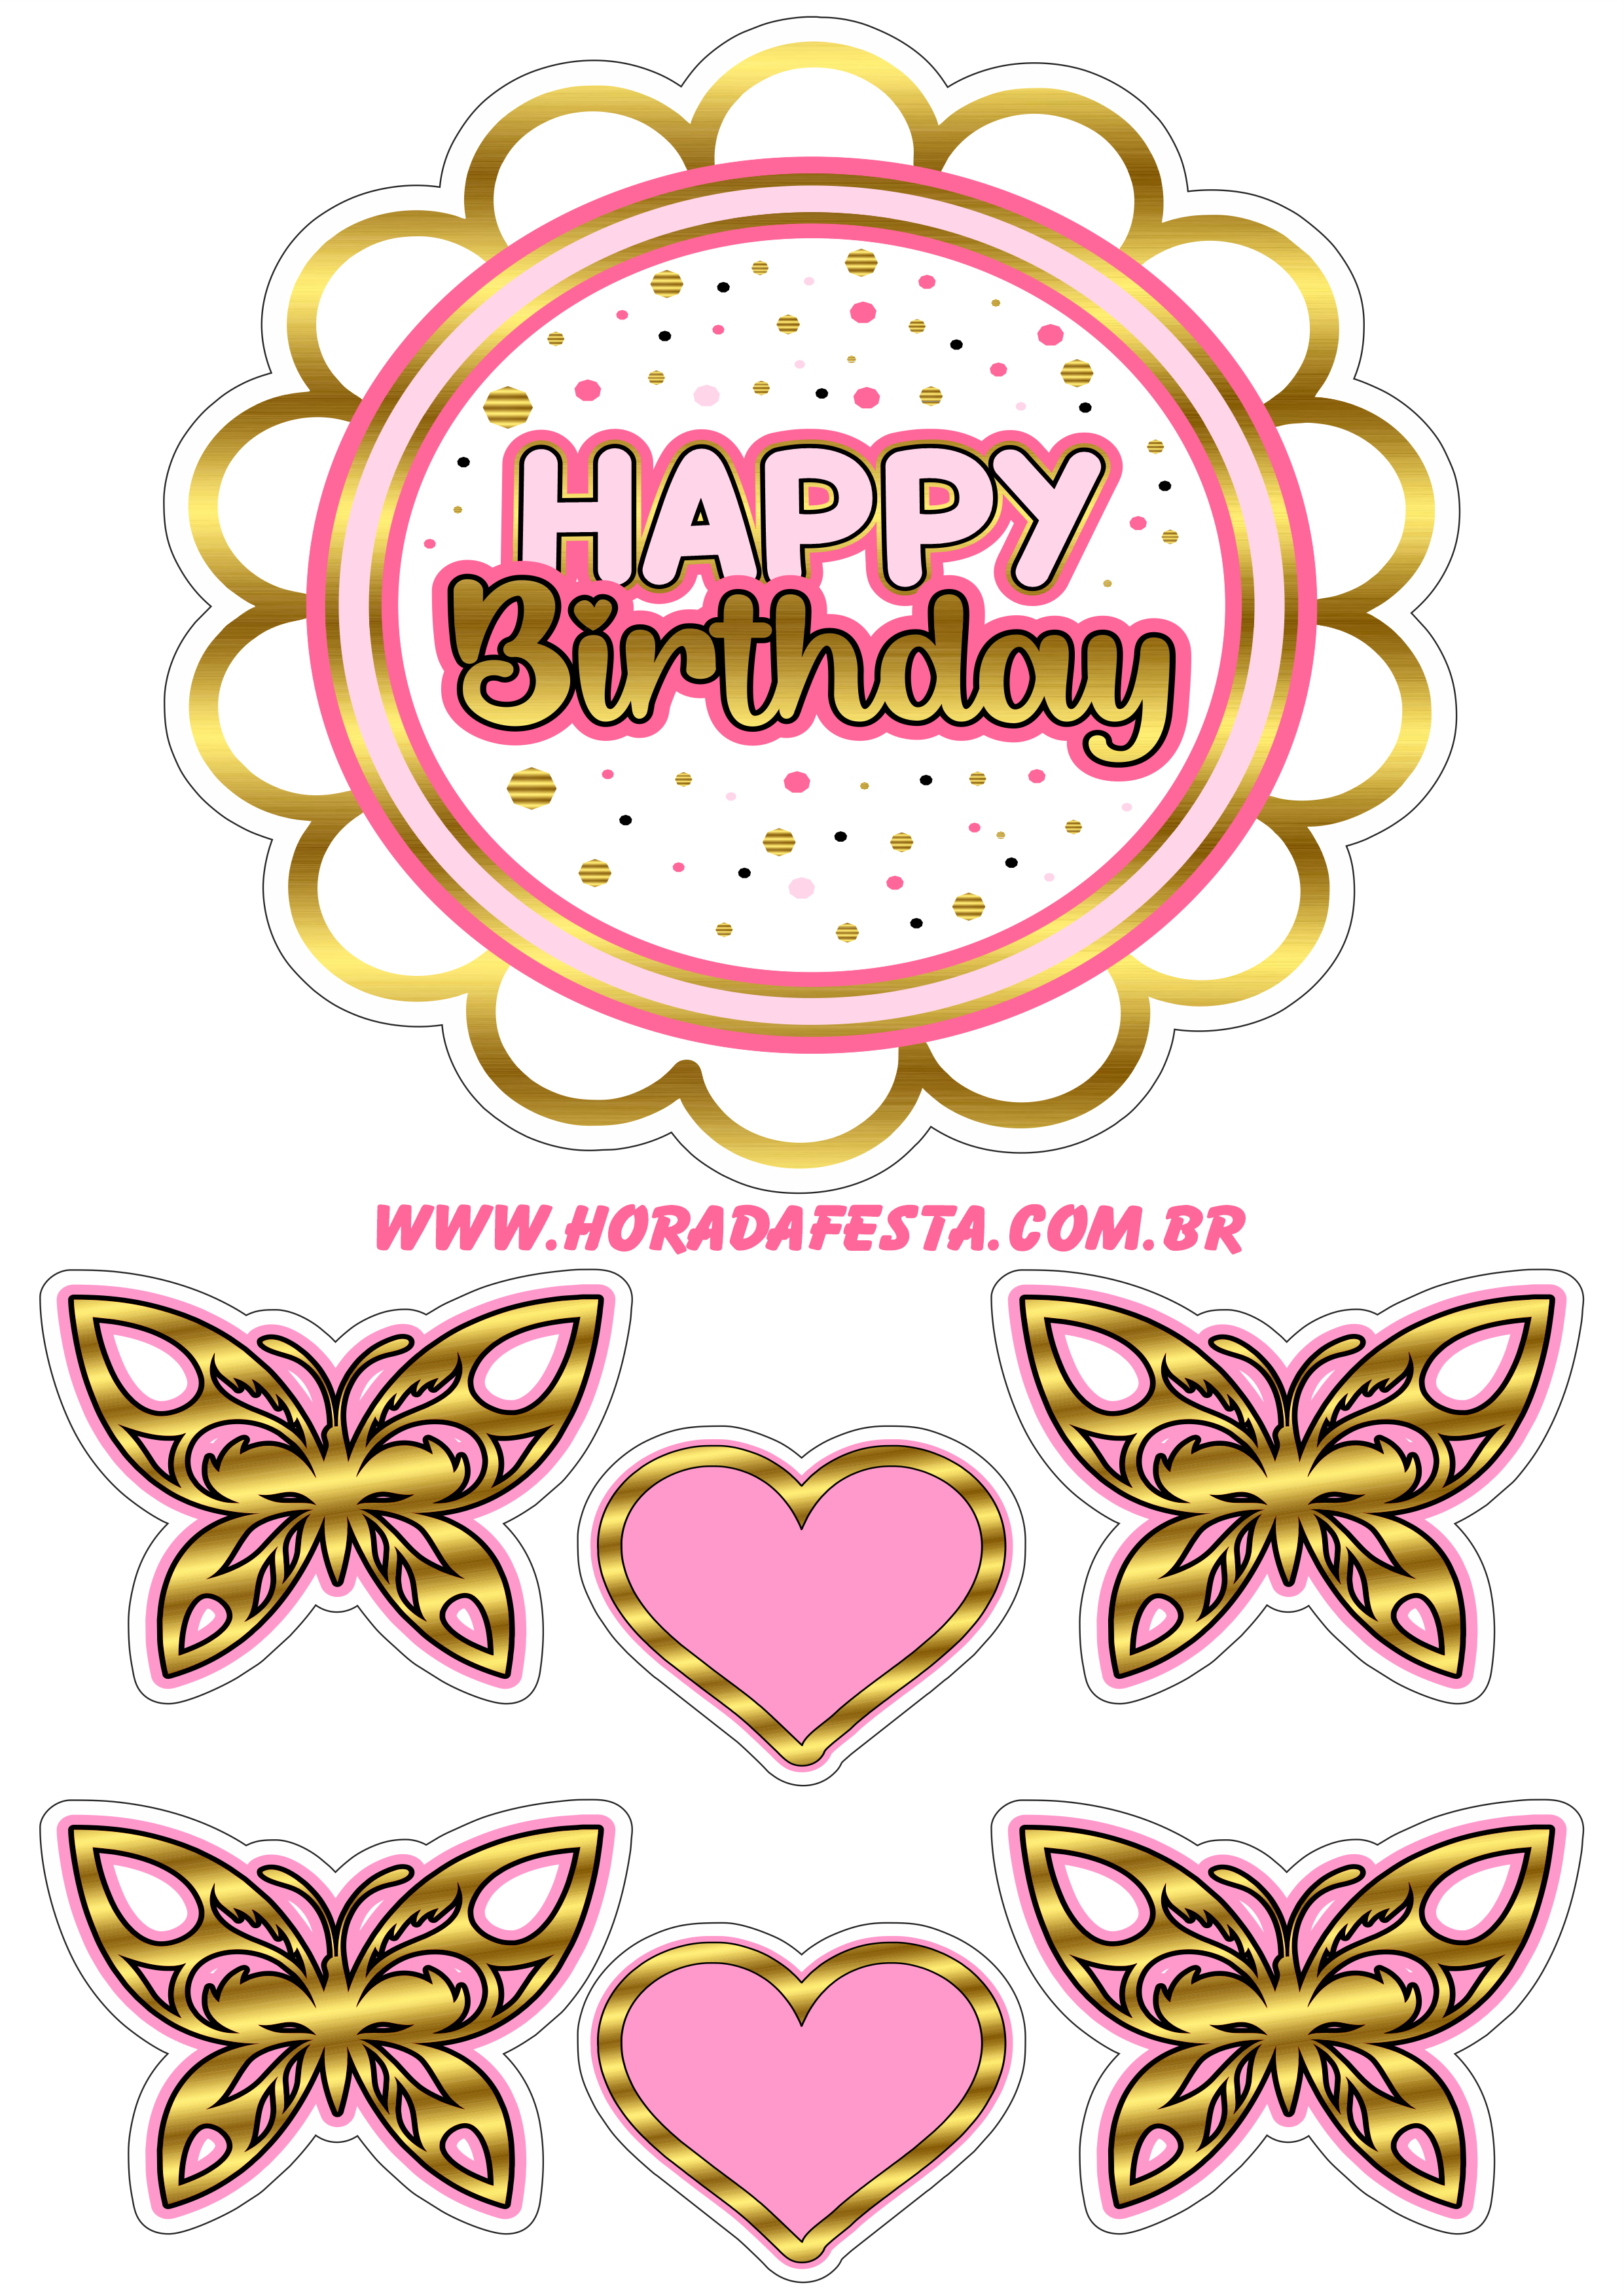 Happy birthday topo de bolo de aniversário dourado com rosa corações e borboletas renda extra com festas png